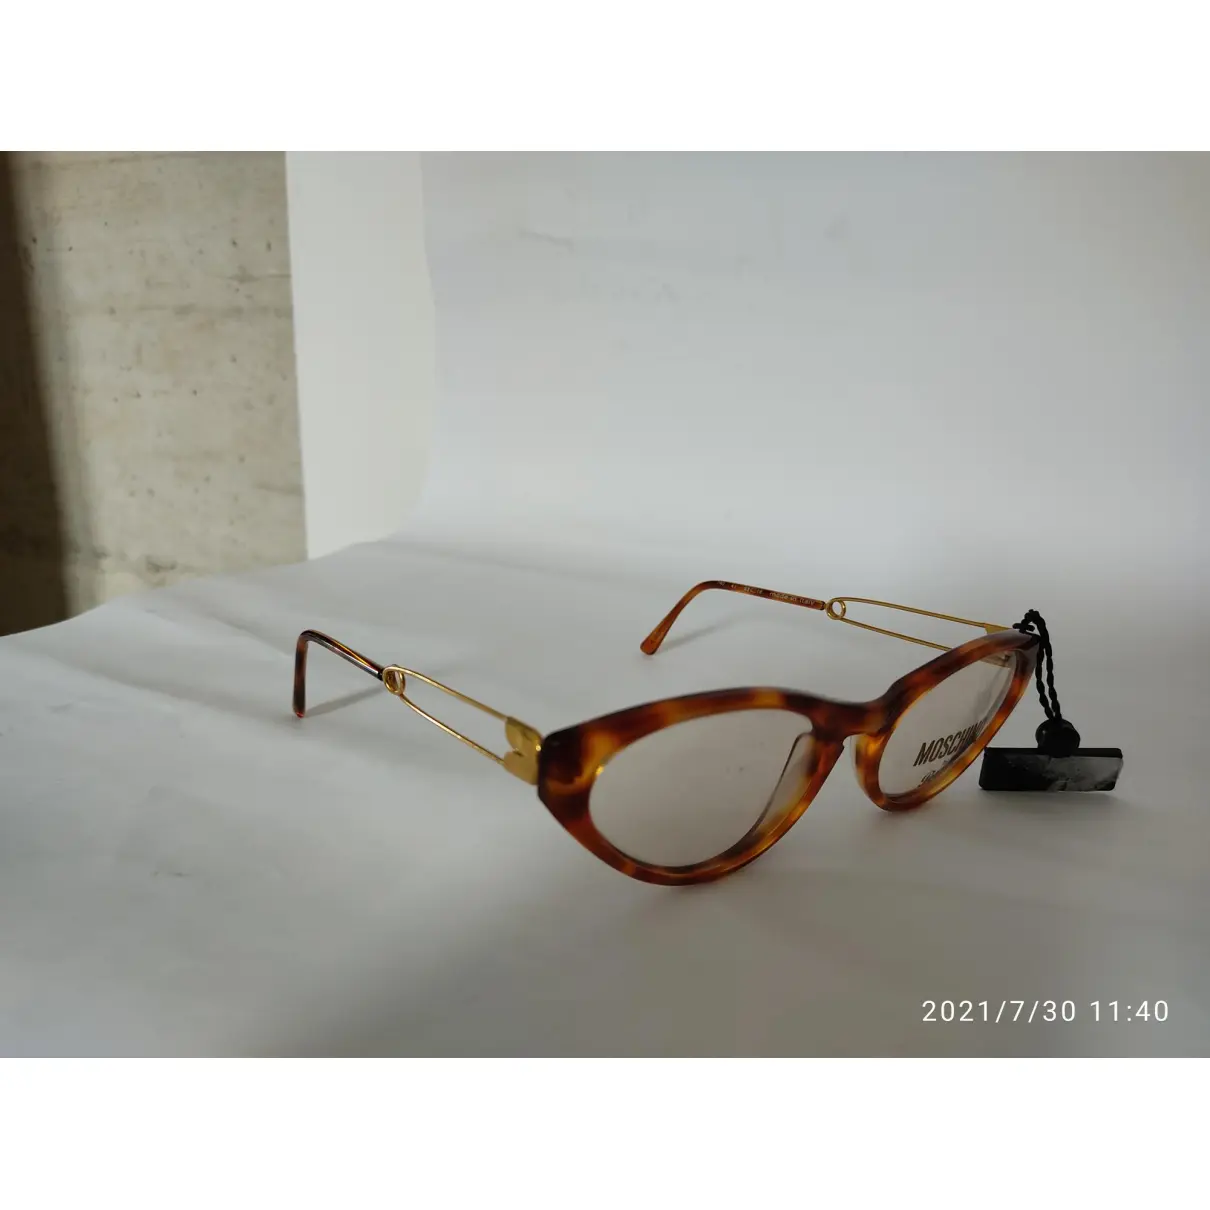 Buy Moschino Sunglasses online